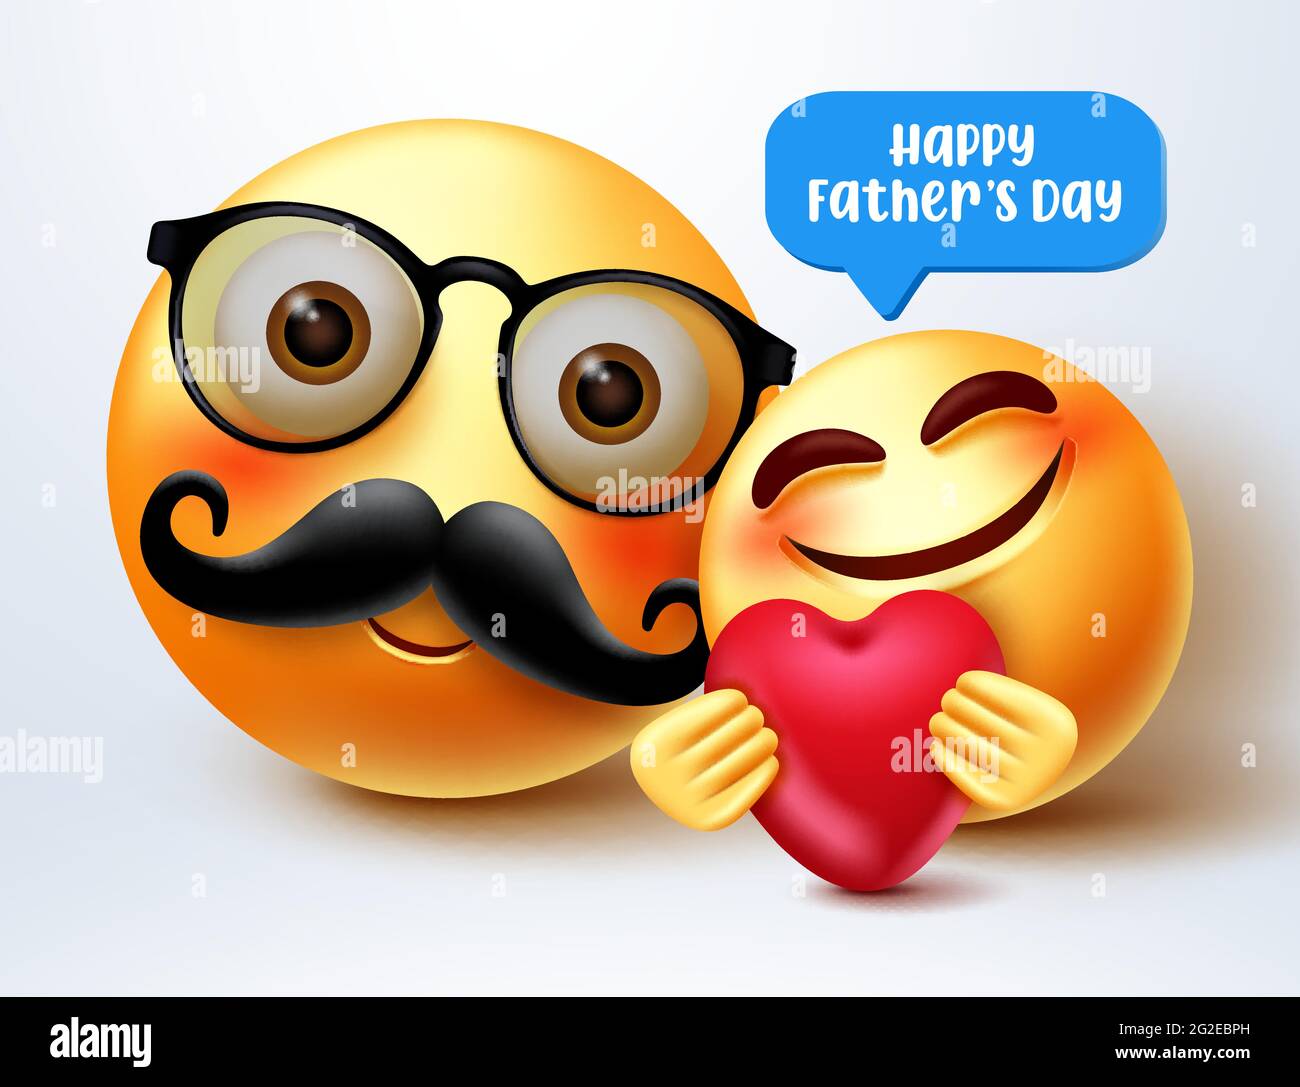 Vatertag Smileys Gruß Vektor-Design. Happy Father's Day Text mit 3d Vater und Kinder Smiley Zeichen für Eltern Feier Gruß. Stock Vektor